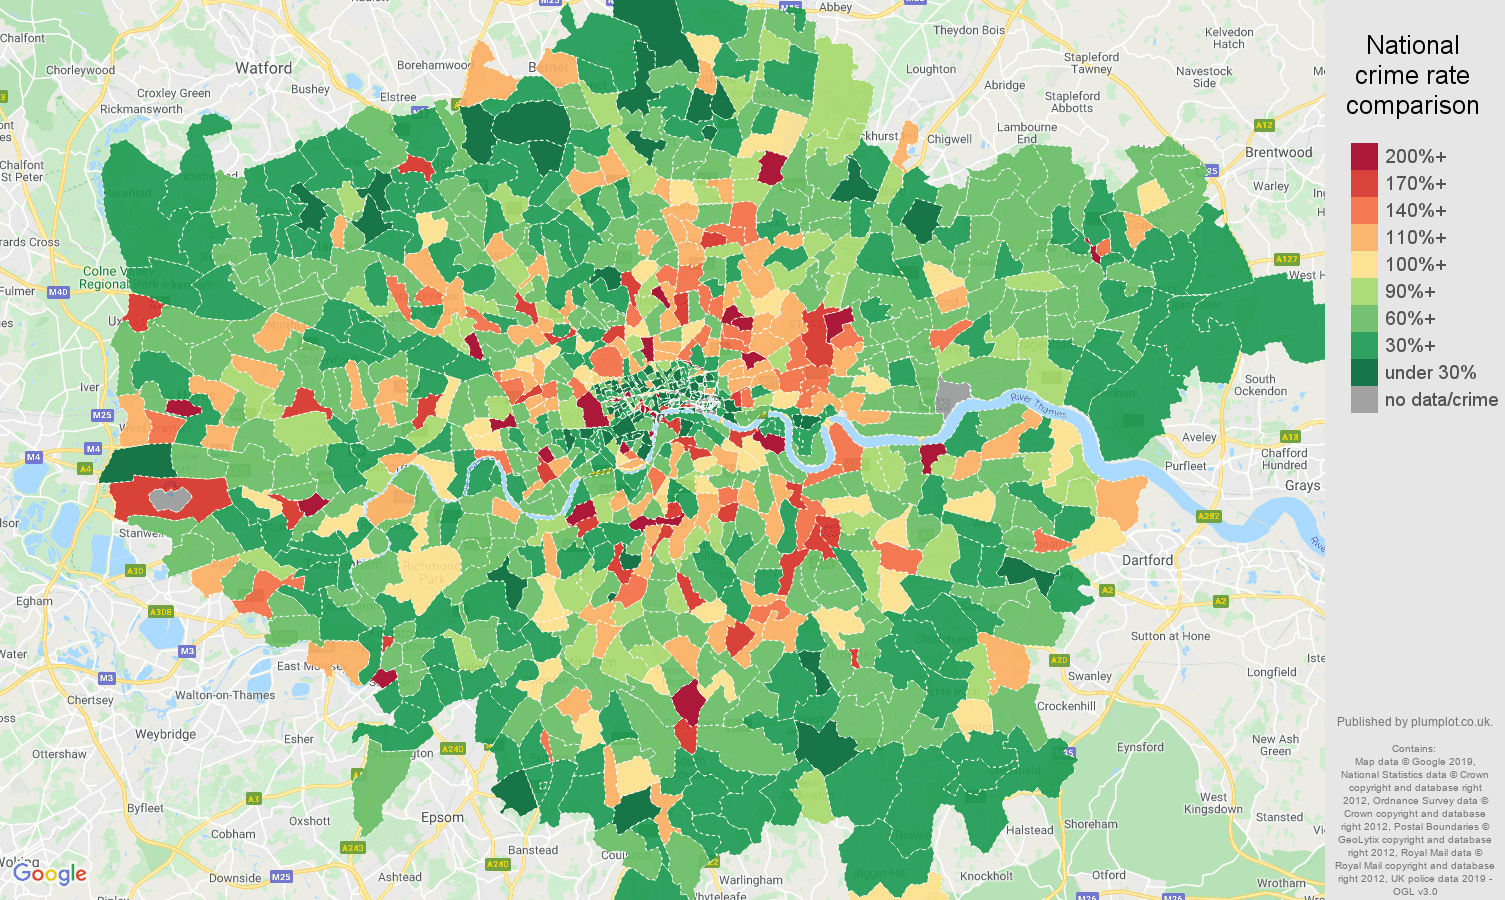 London public order crime rate comparison map